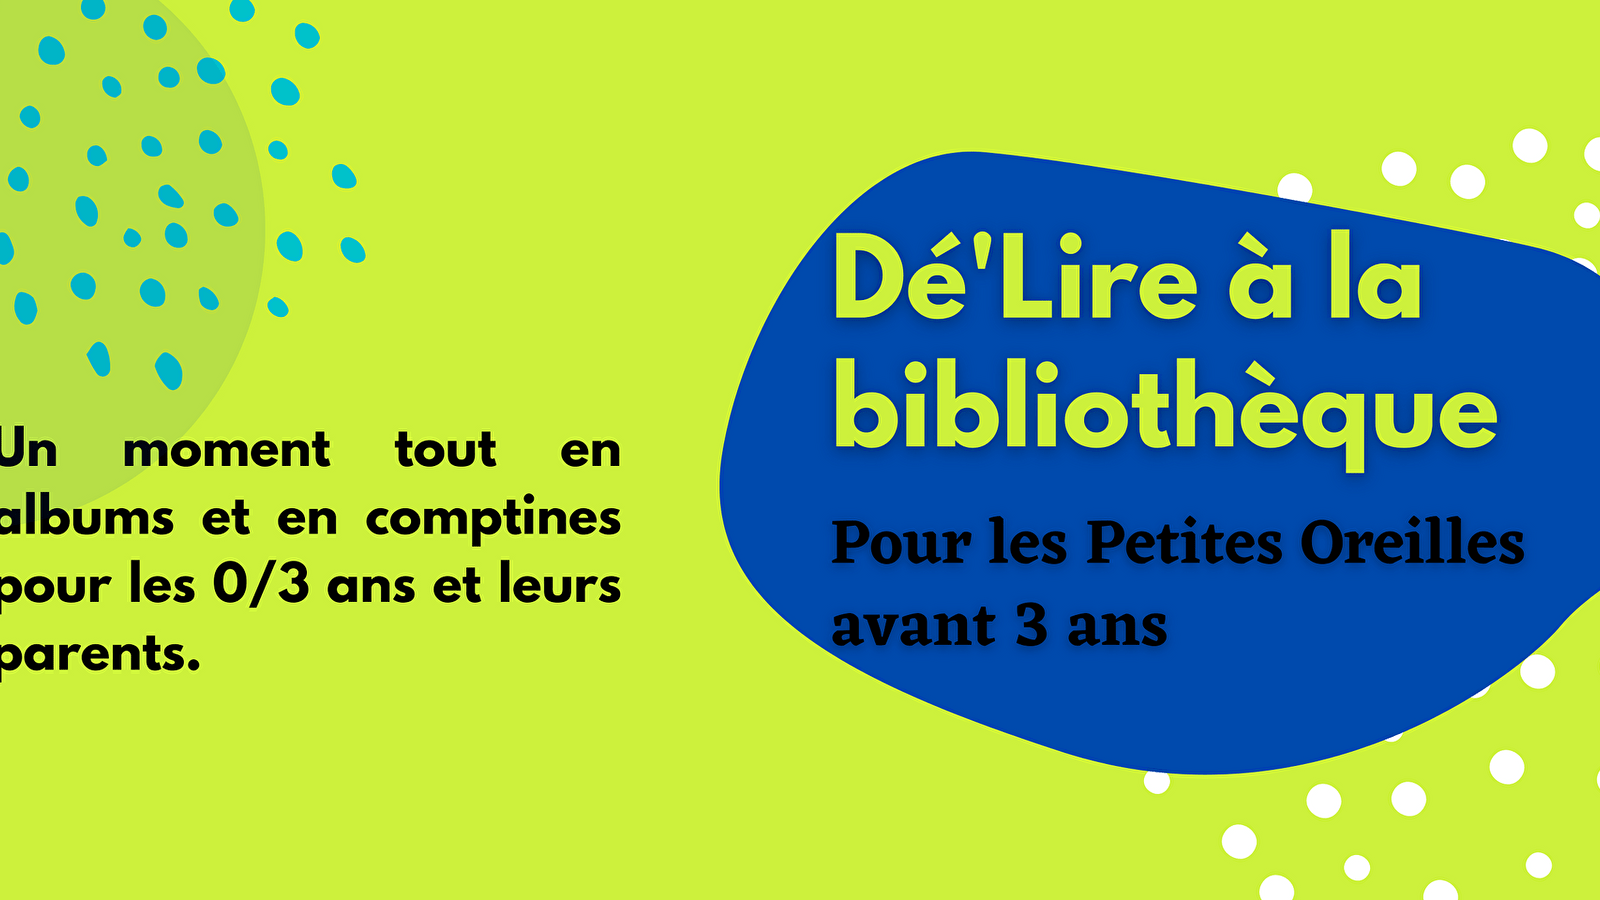 Dé'Lire at the library for Petites Oreilles (Colette)